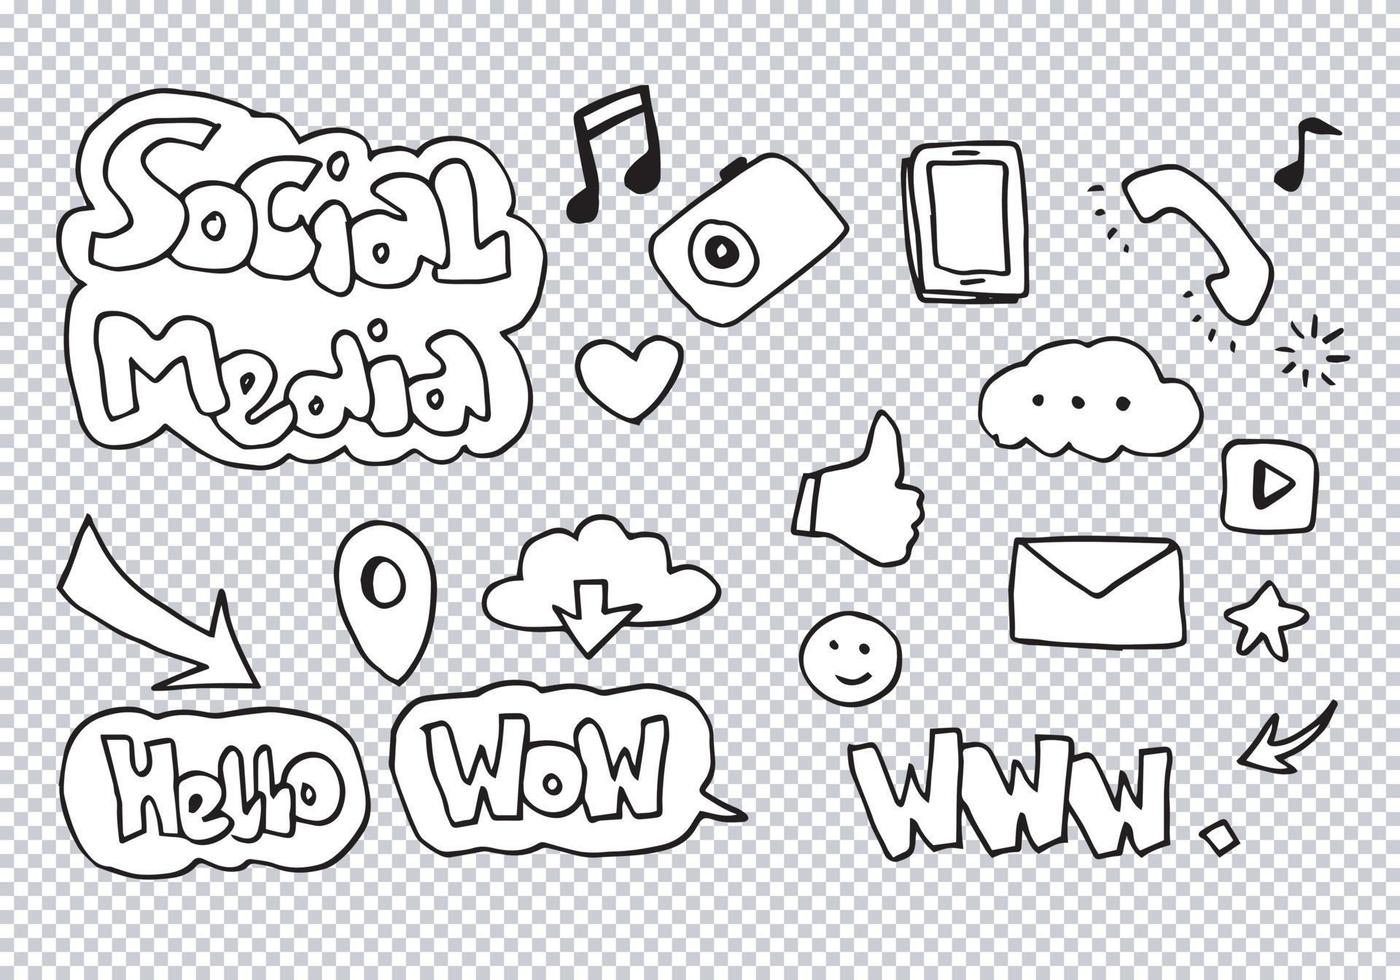 vektor line art doodle tecknad uppsättning objekt och symboler på temat sociala medier.